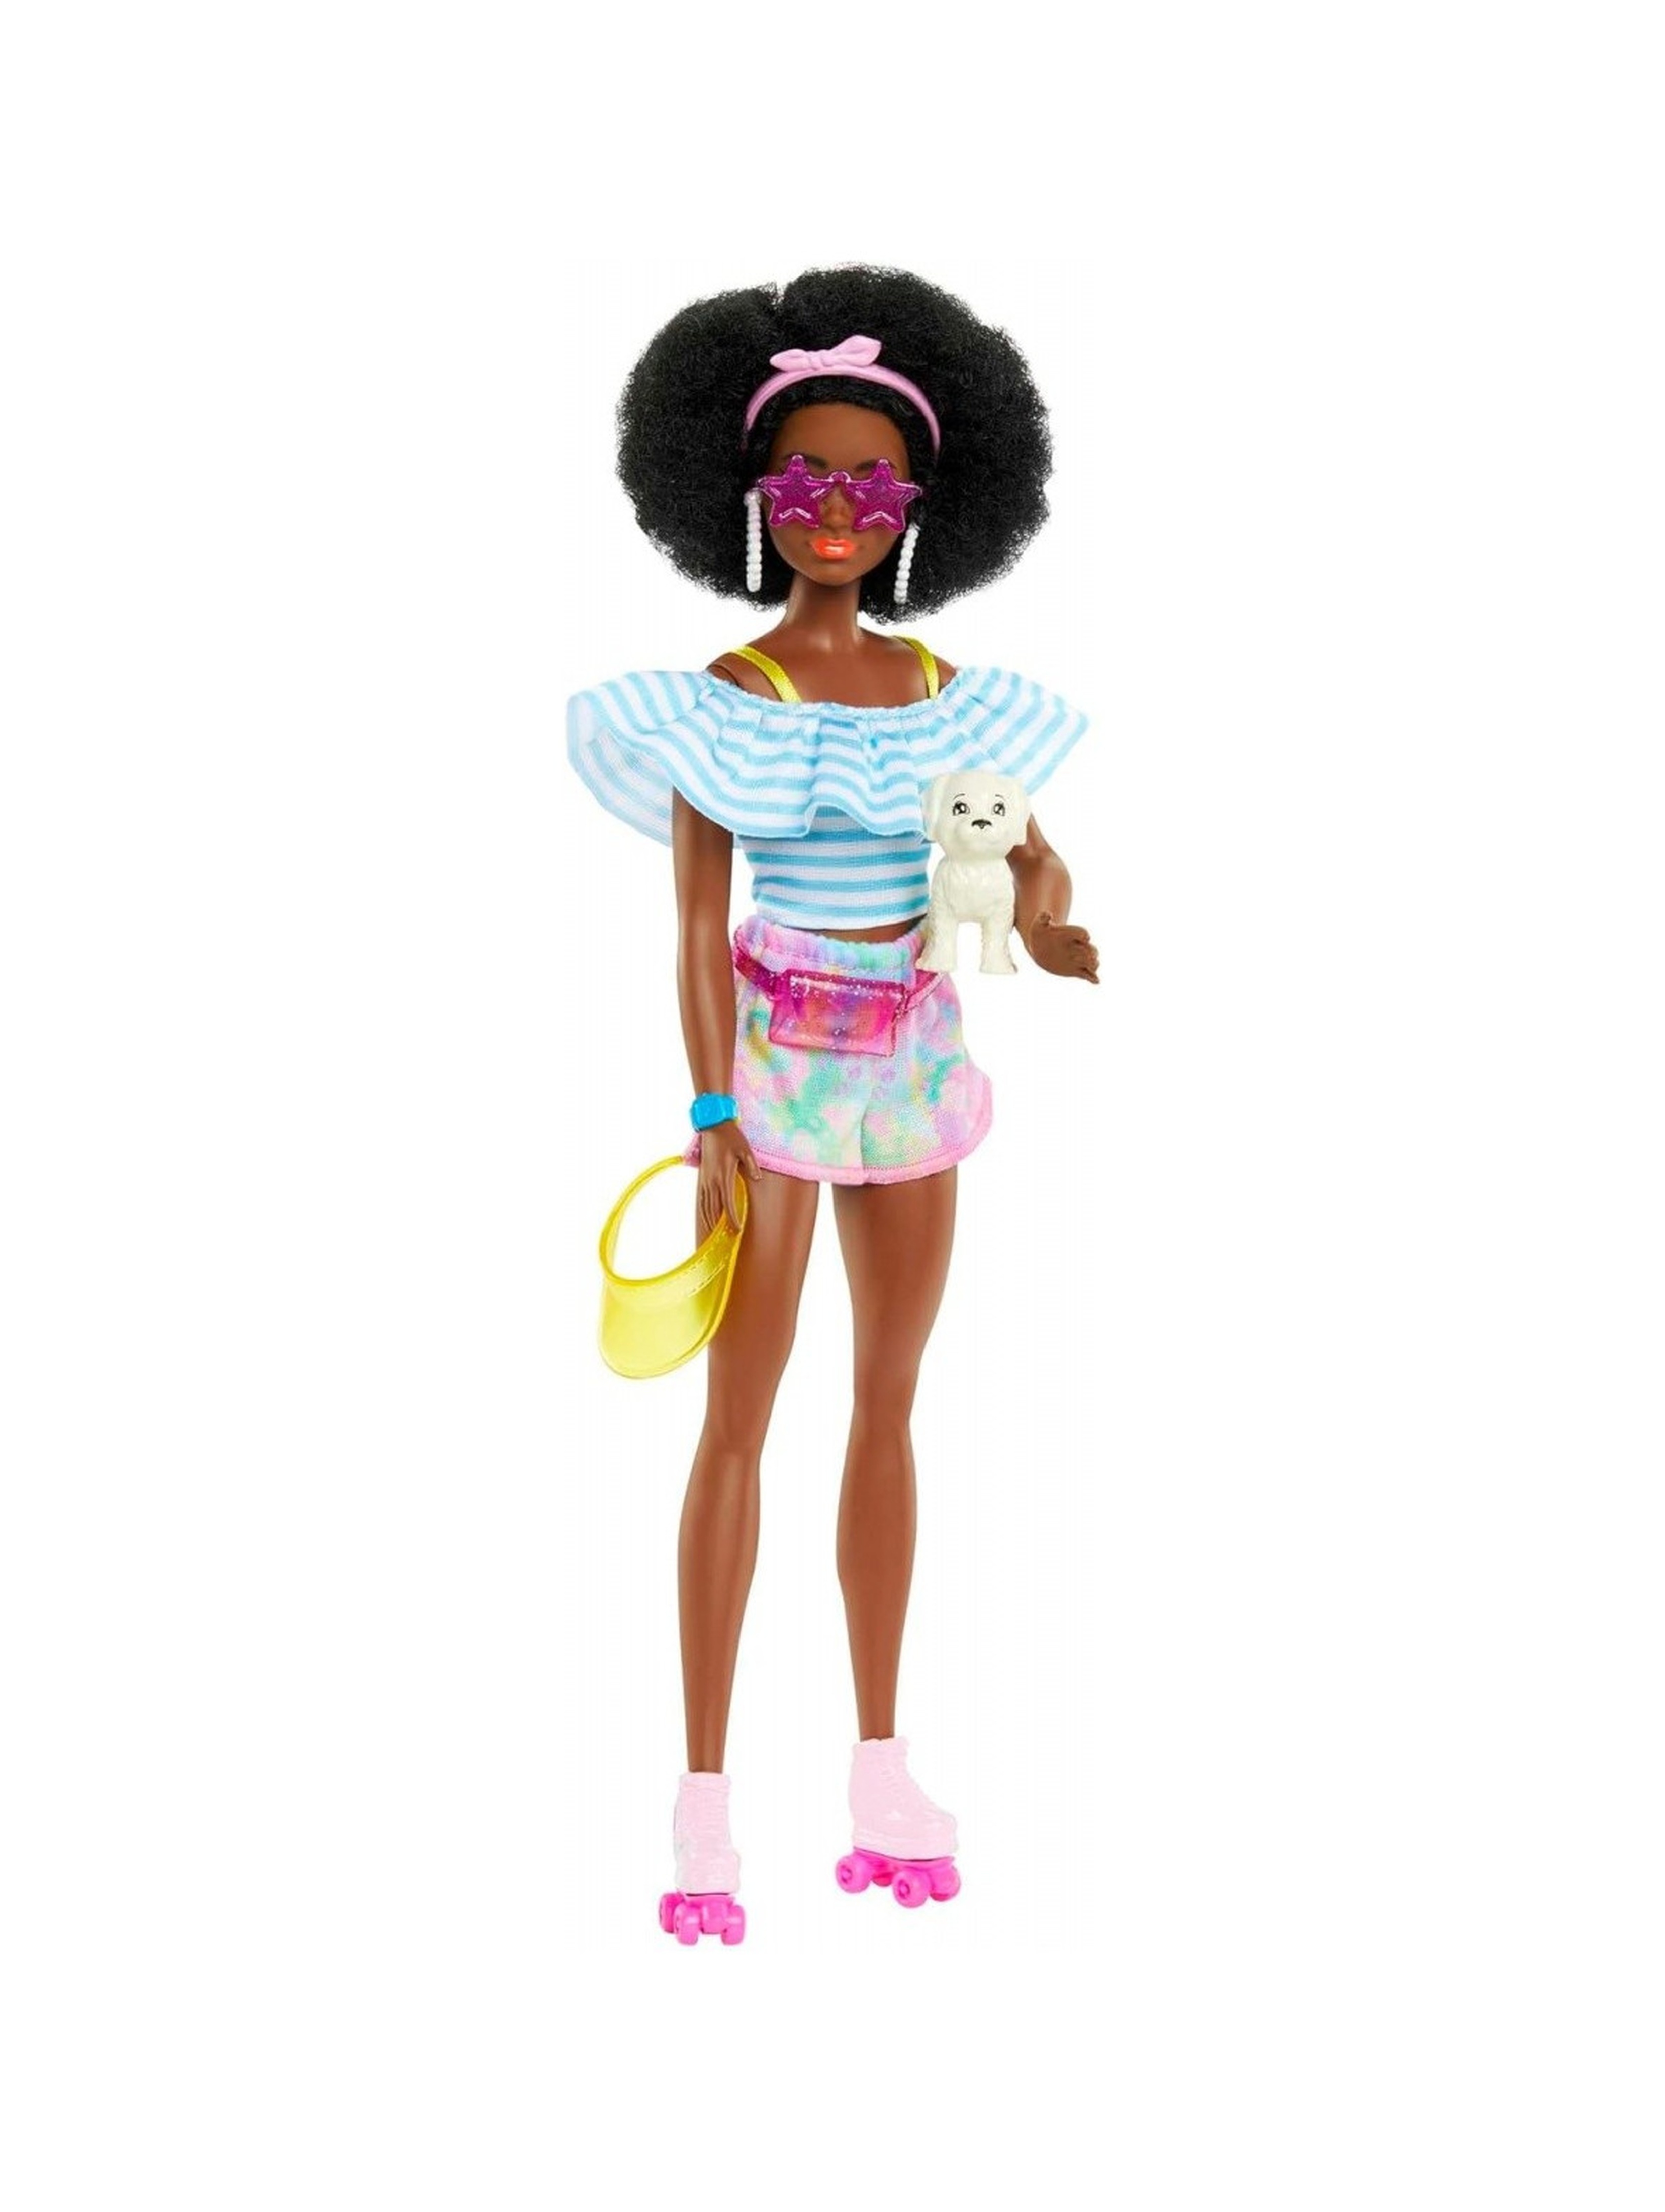 Lalka Barbie z fryzurą w stylu afro z akcesoriami